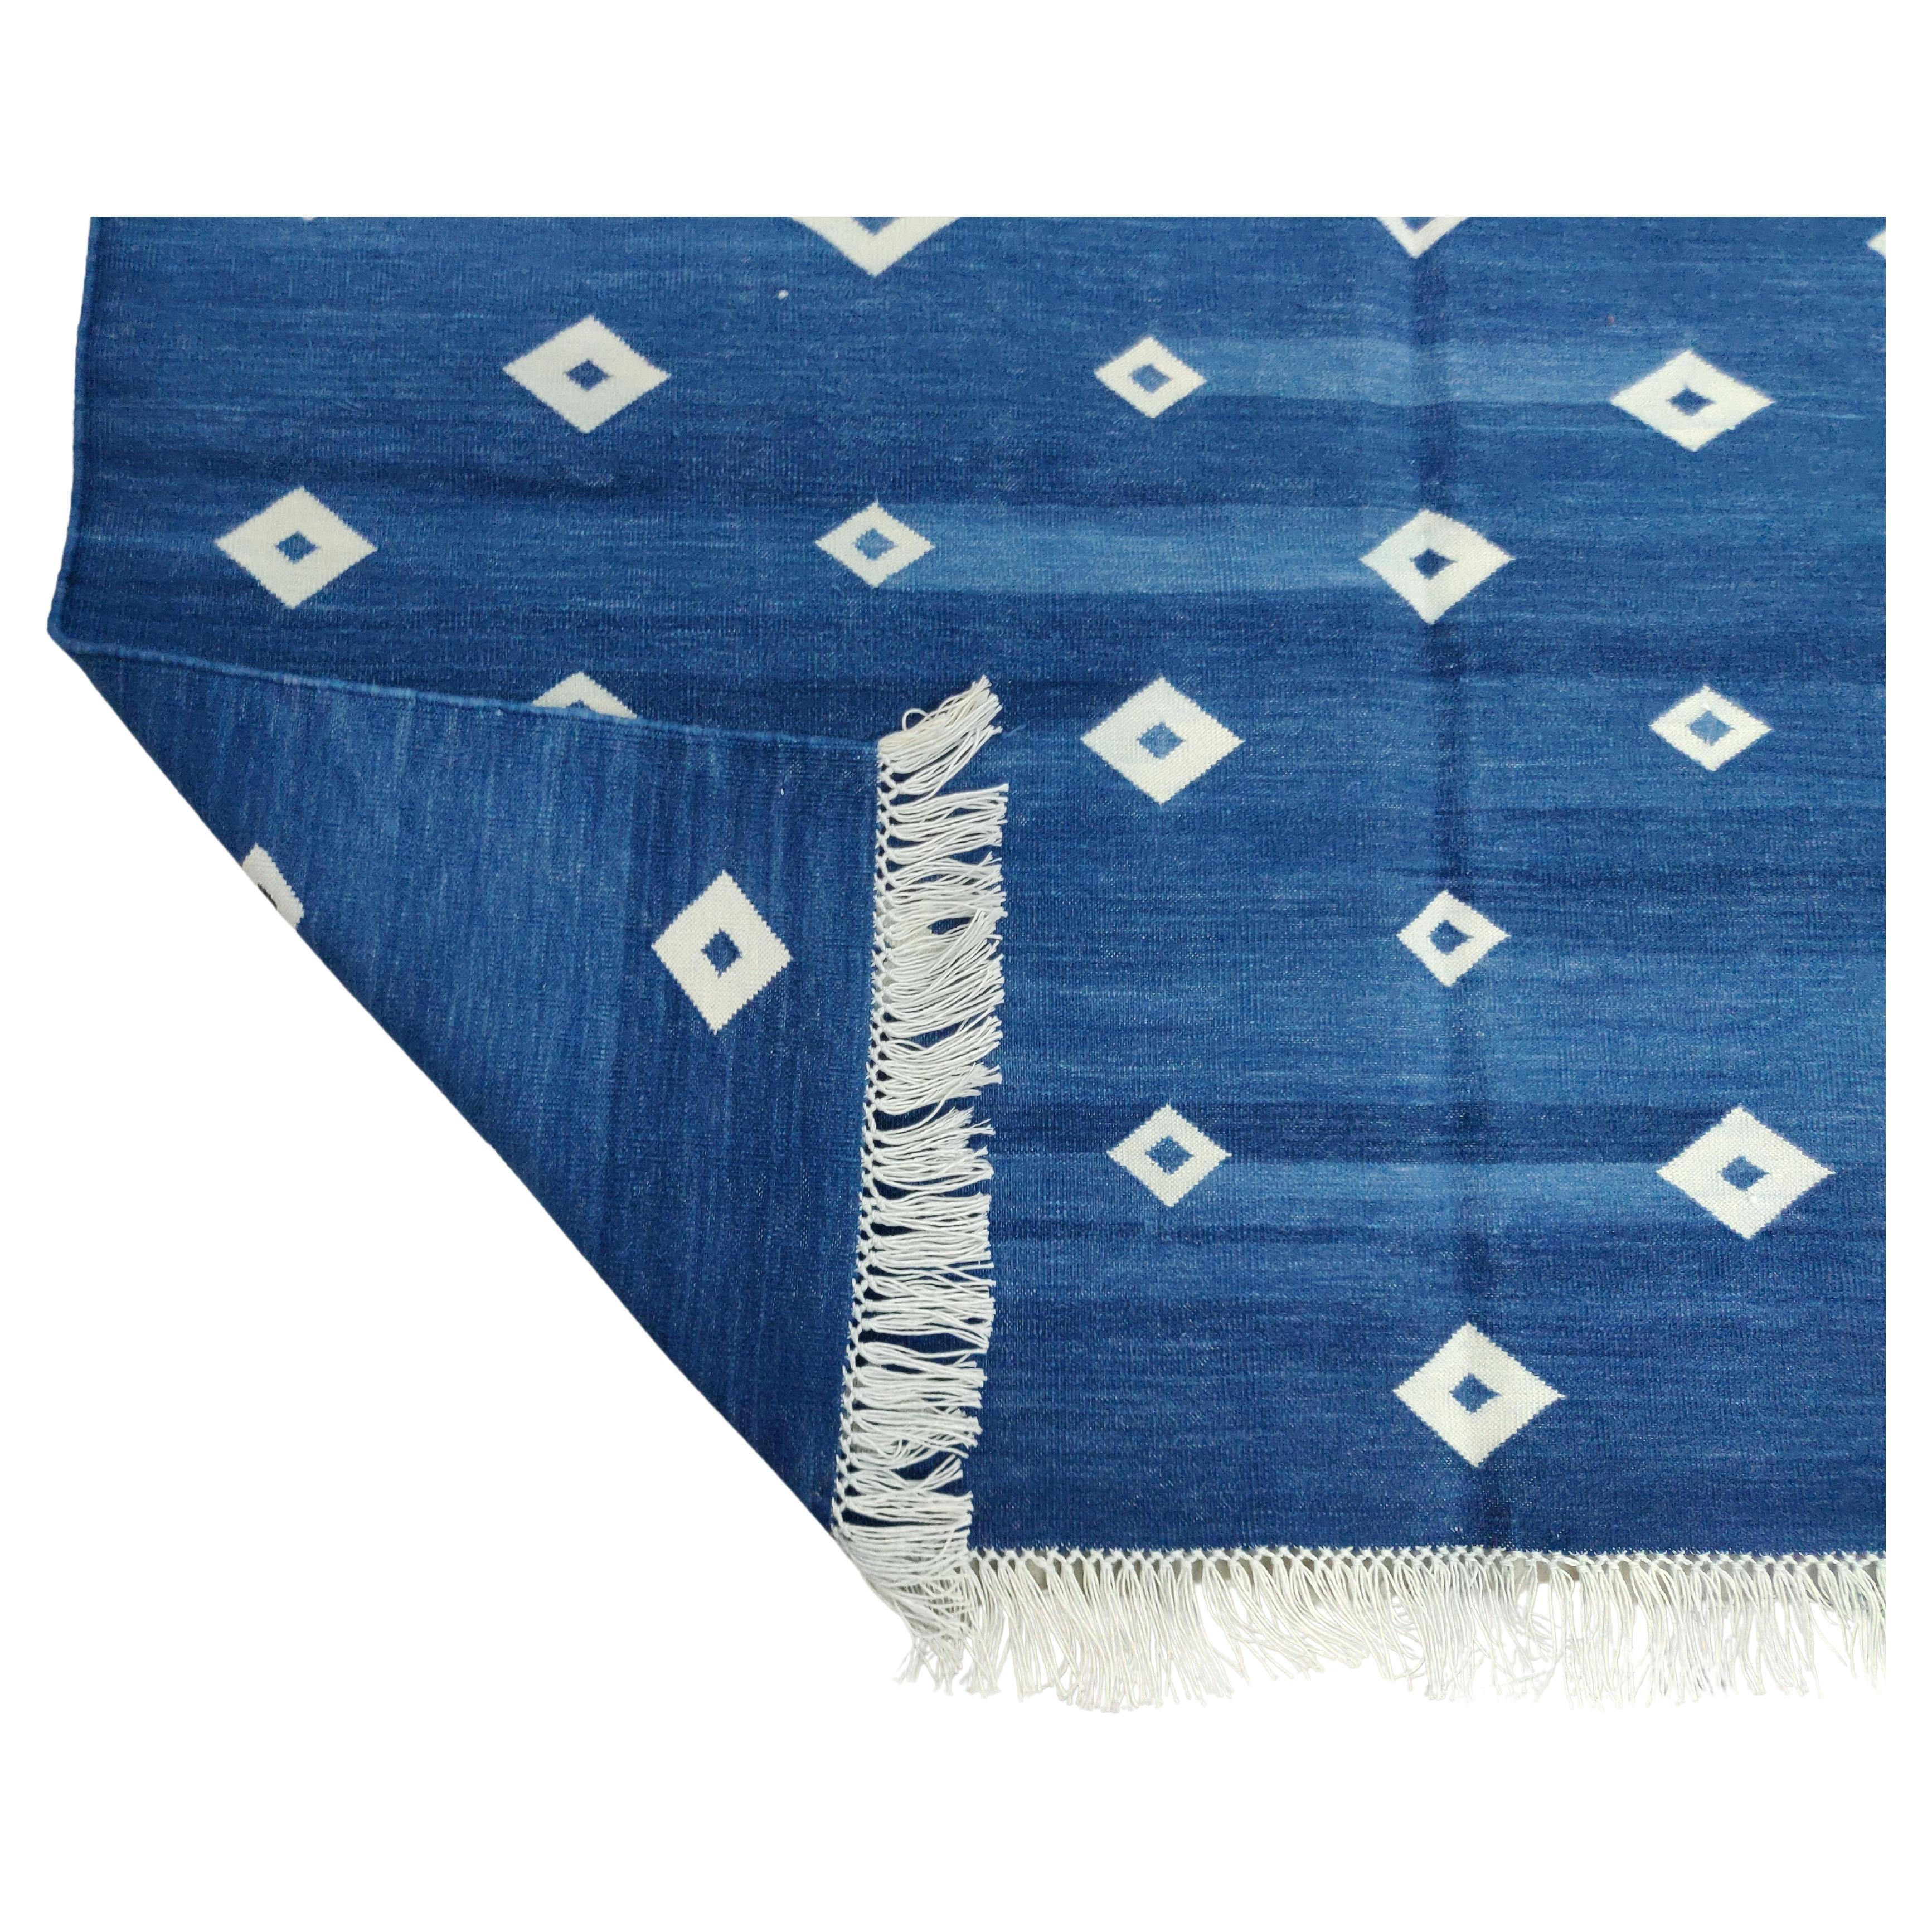 Baumwolle pflanzlich gefärbt Indigo blau und weiß Diamant indischen Dhurrie Teppich-4'x6' 

Diese speziellen flachgewebten Dhurries werden aus 15-fachem Garn aus 100% Baumwolle handgewebt. Aufgrund der speziellen Fertigungstechniken, die zur